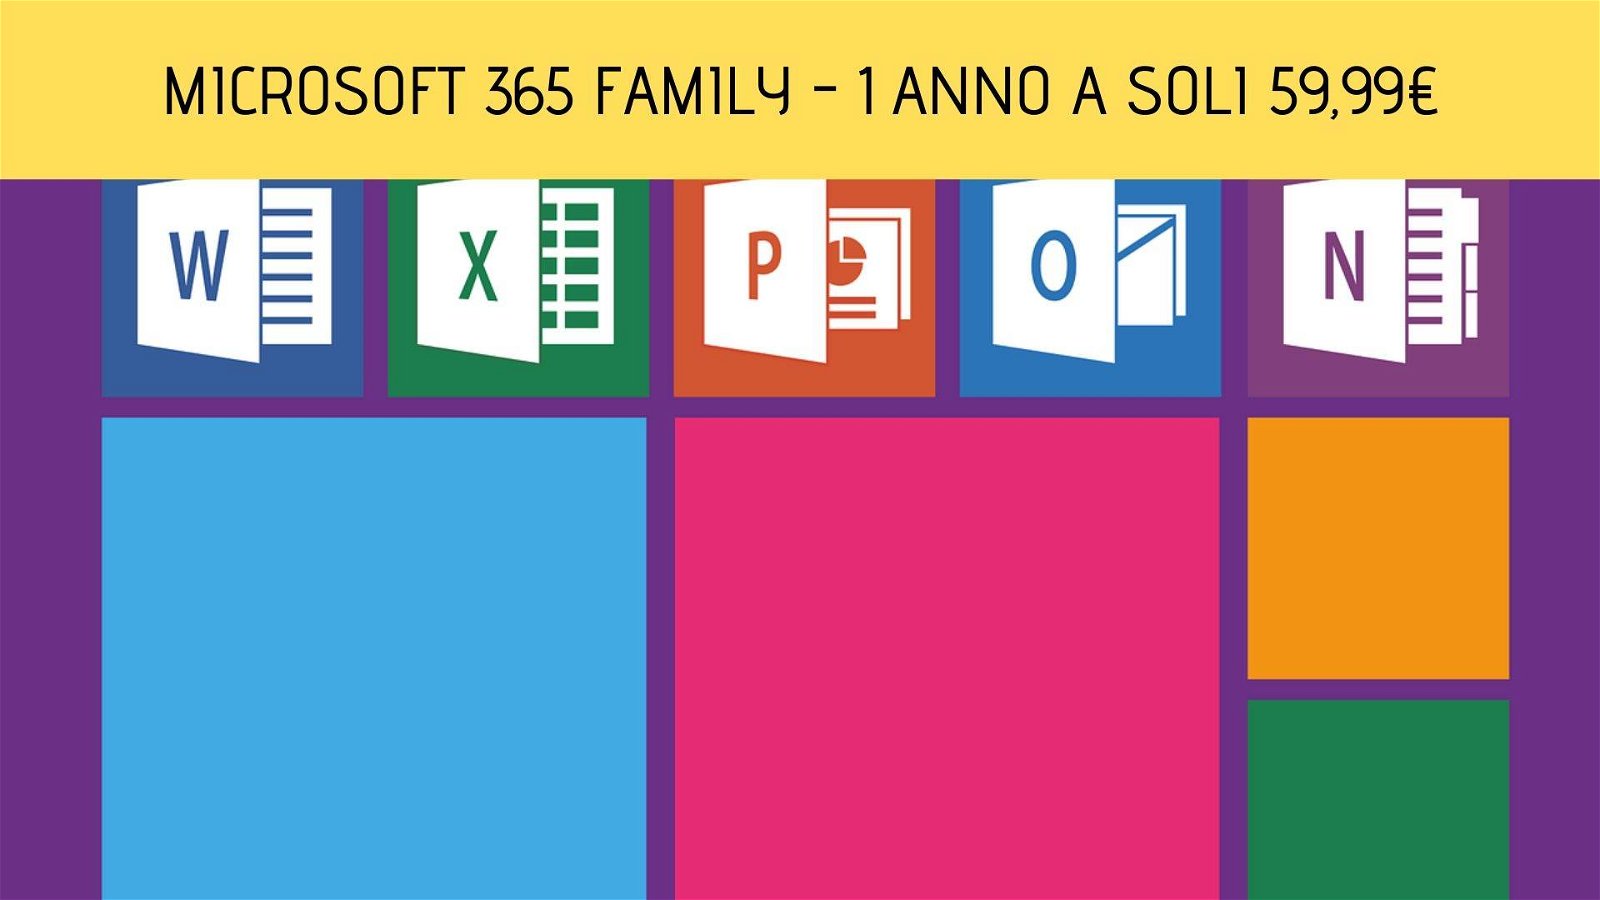 Immagine di Microsoft 365 Family: abbonamento annuale per 6 persone in sconto a meno di 60 euro!